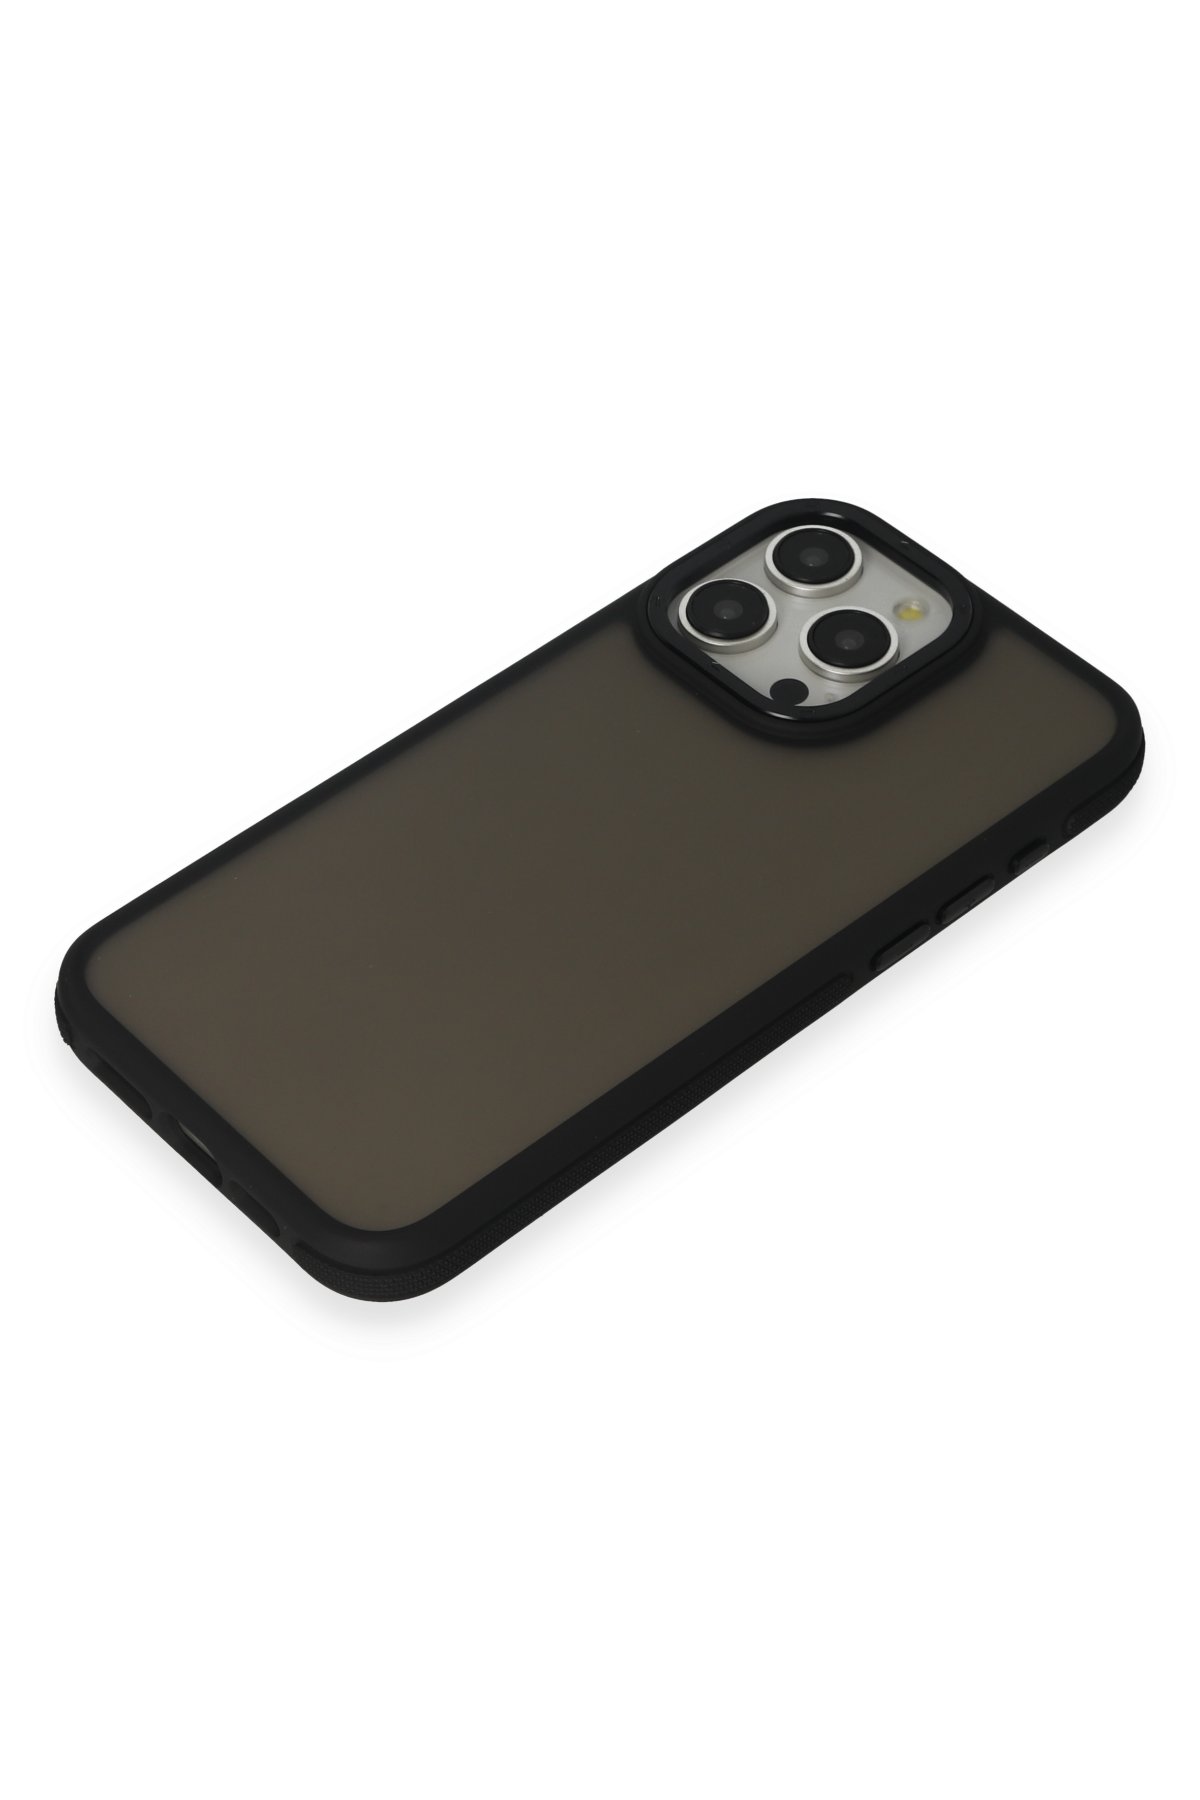 Joko iPhone 15 Pro Max Montella Magsafe Kapak - Gümüş